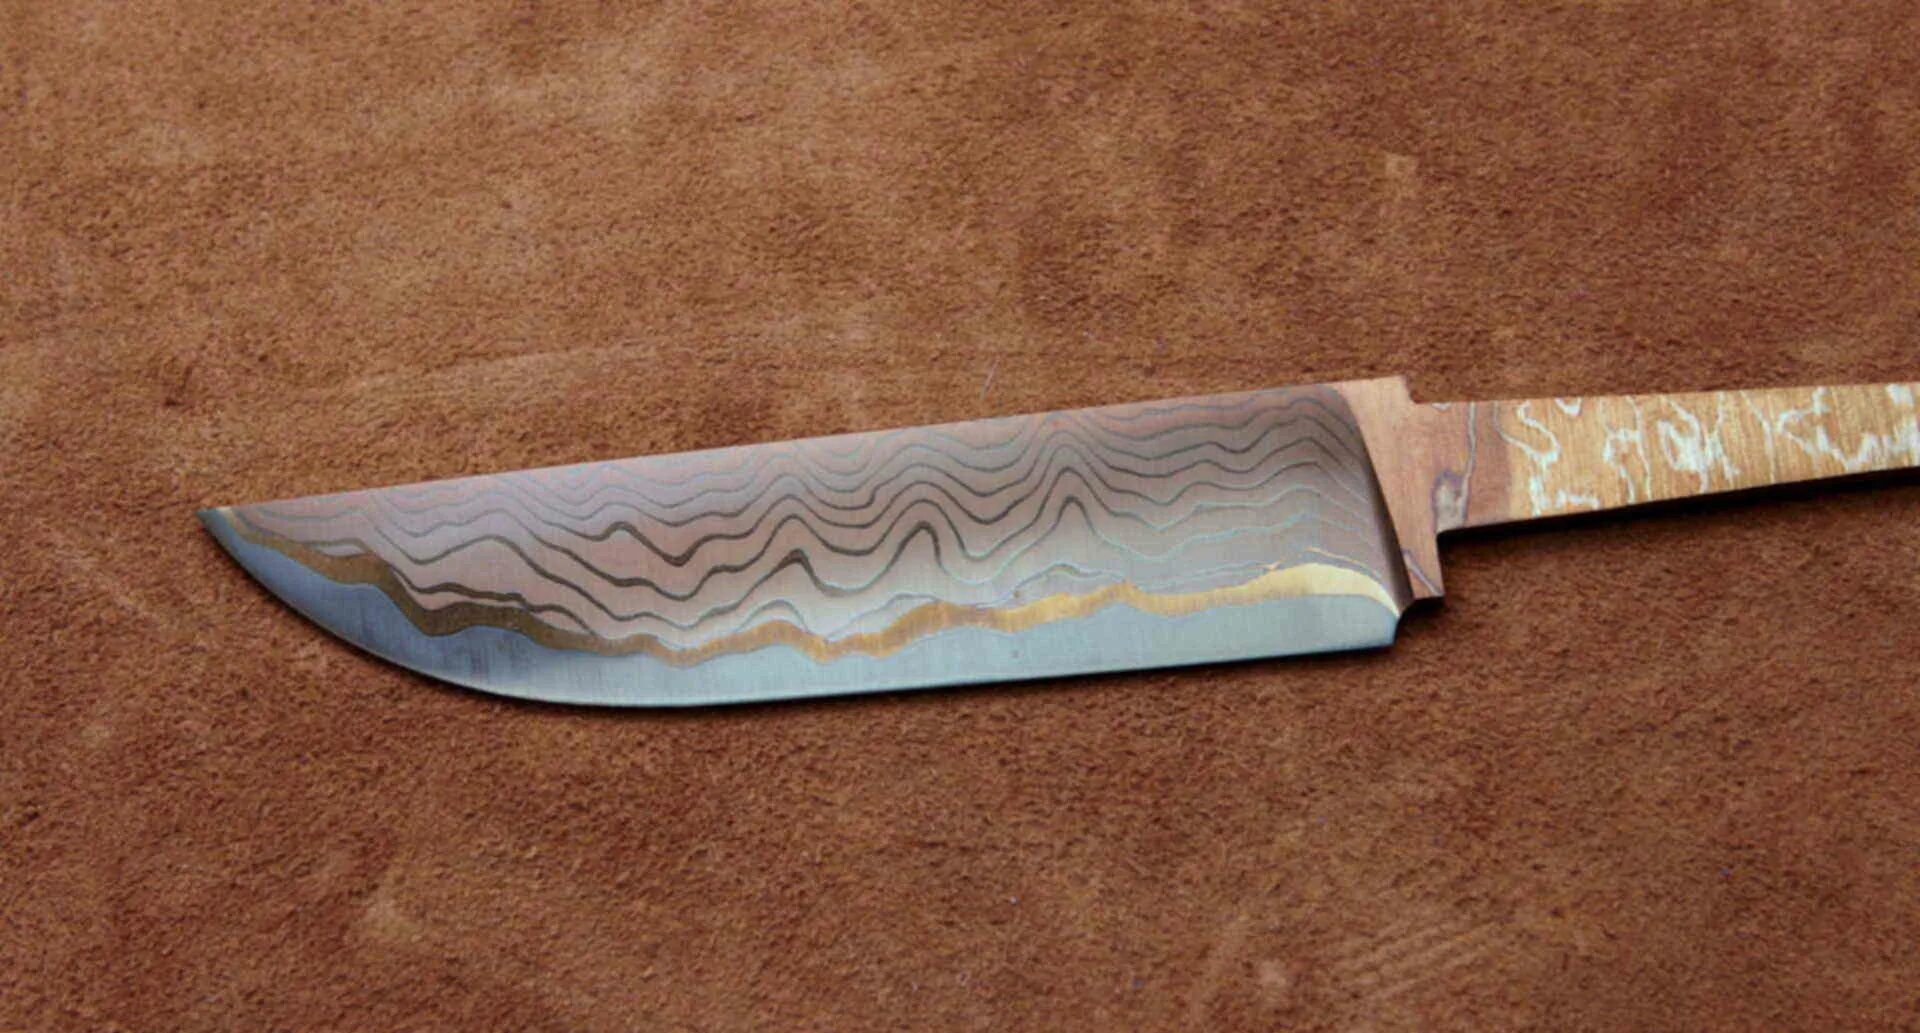 Ламинированная сталь. Ламинат клинок vg10. Нож ламинатная сталь. Клинки для ножей. Ламинированная сталь для ножей.